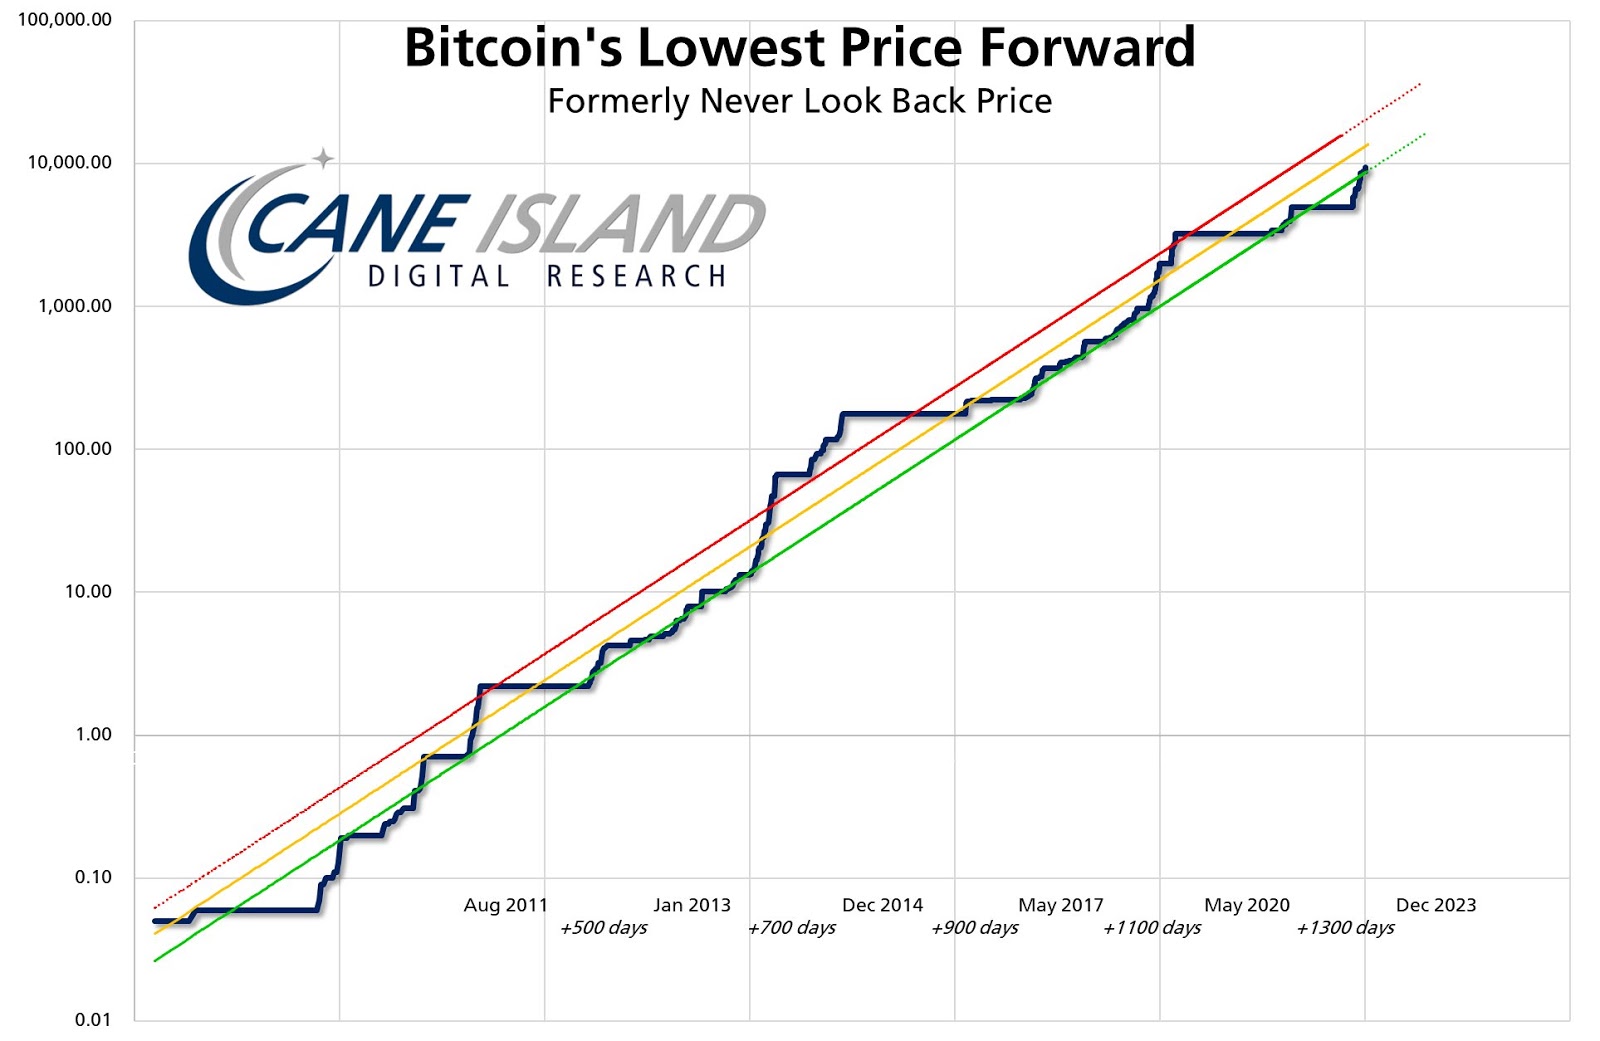 BTC/USD lowest price forward chart